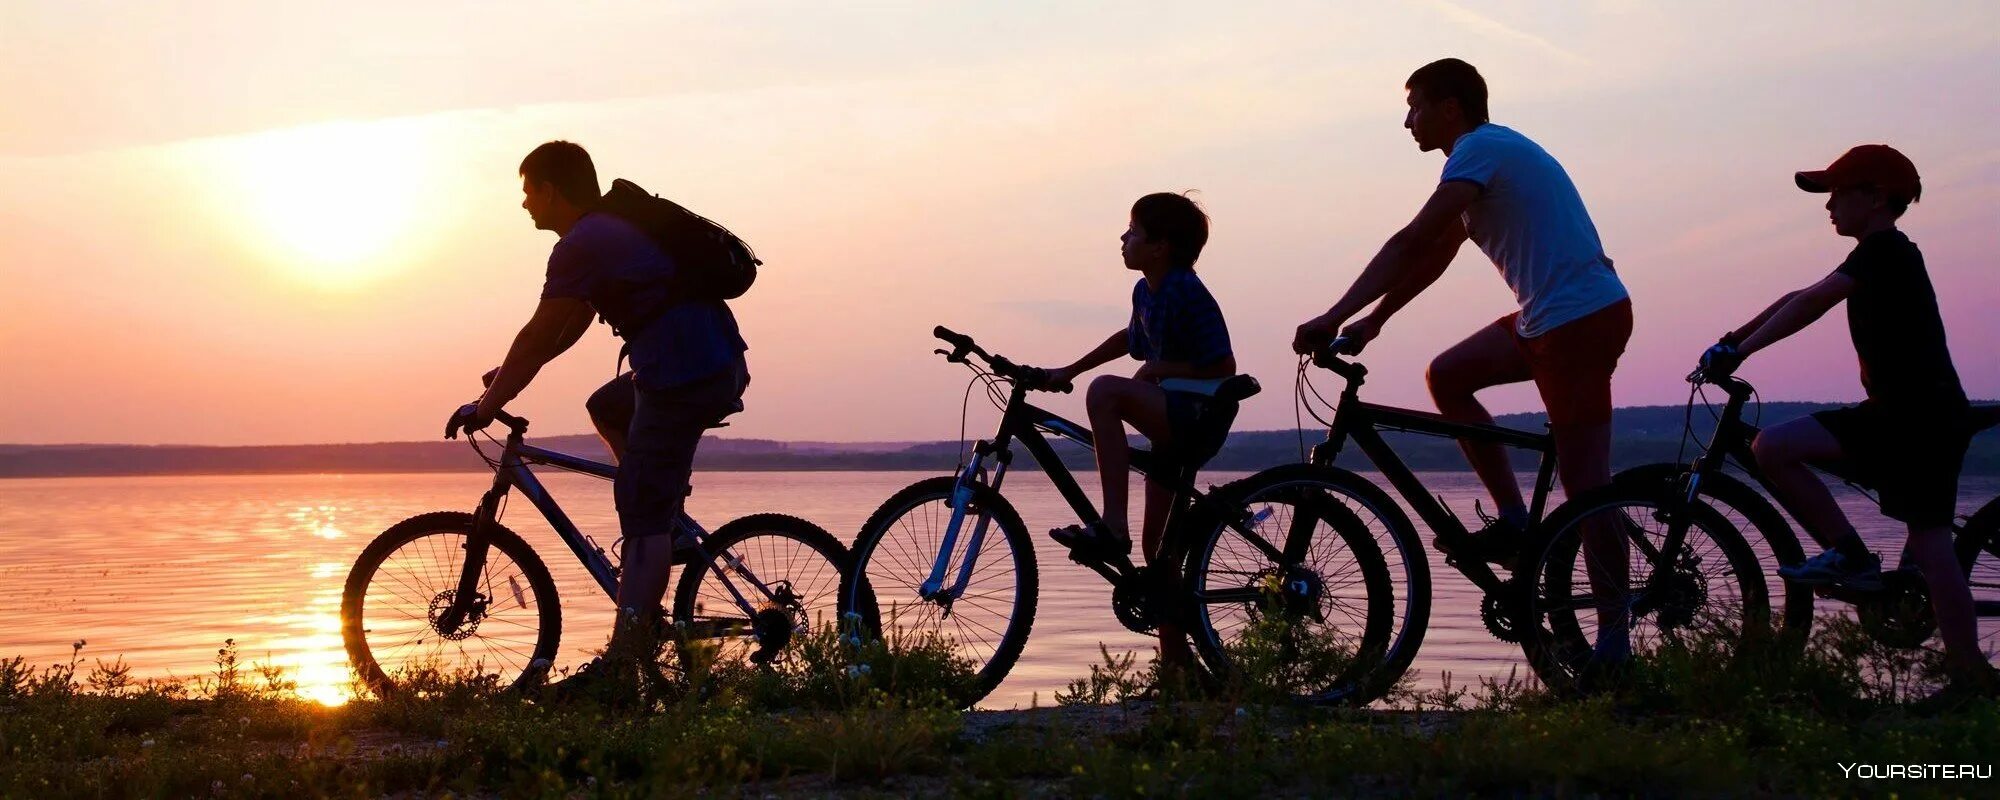 Семья на велосипедах. Велосипедисты семья. Семейная велопрогулка. Велосипедные прогулки семьей. Ride their bikes